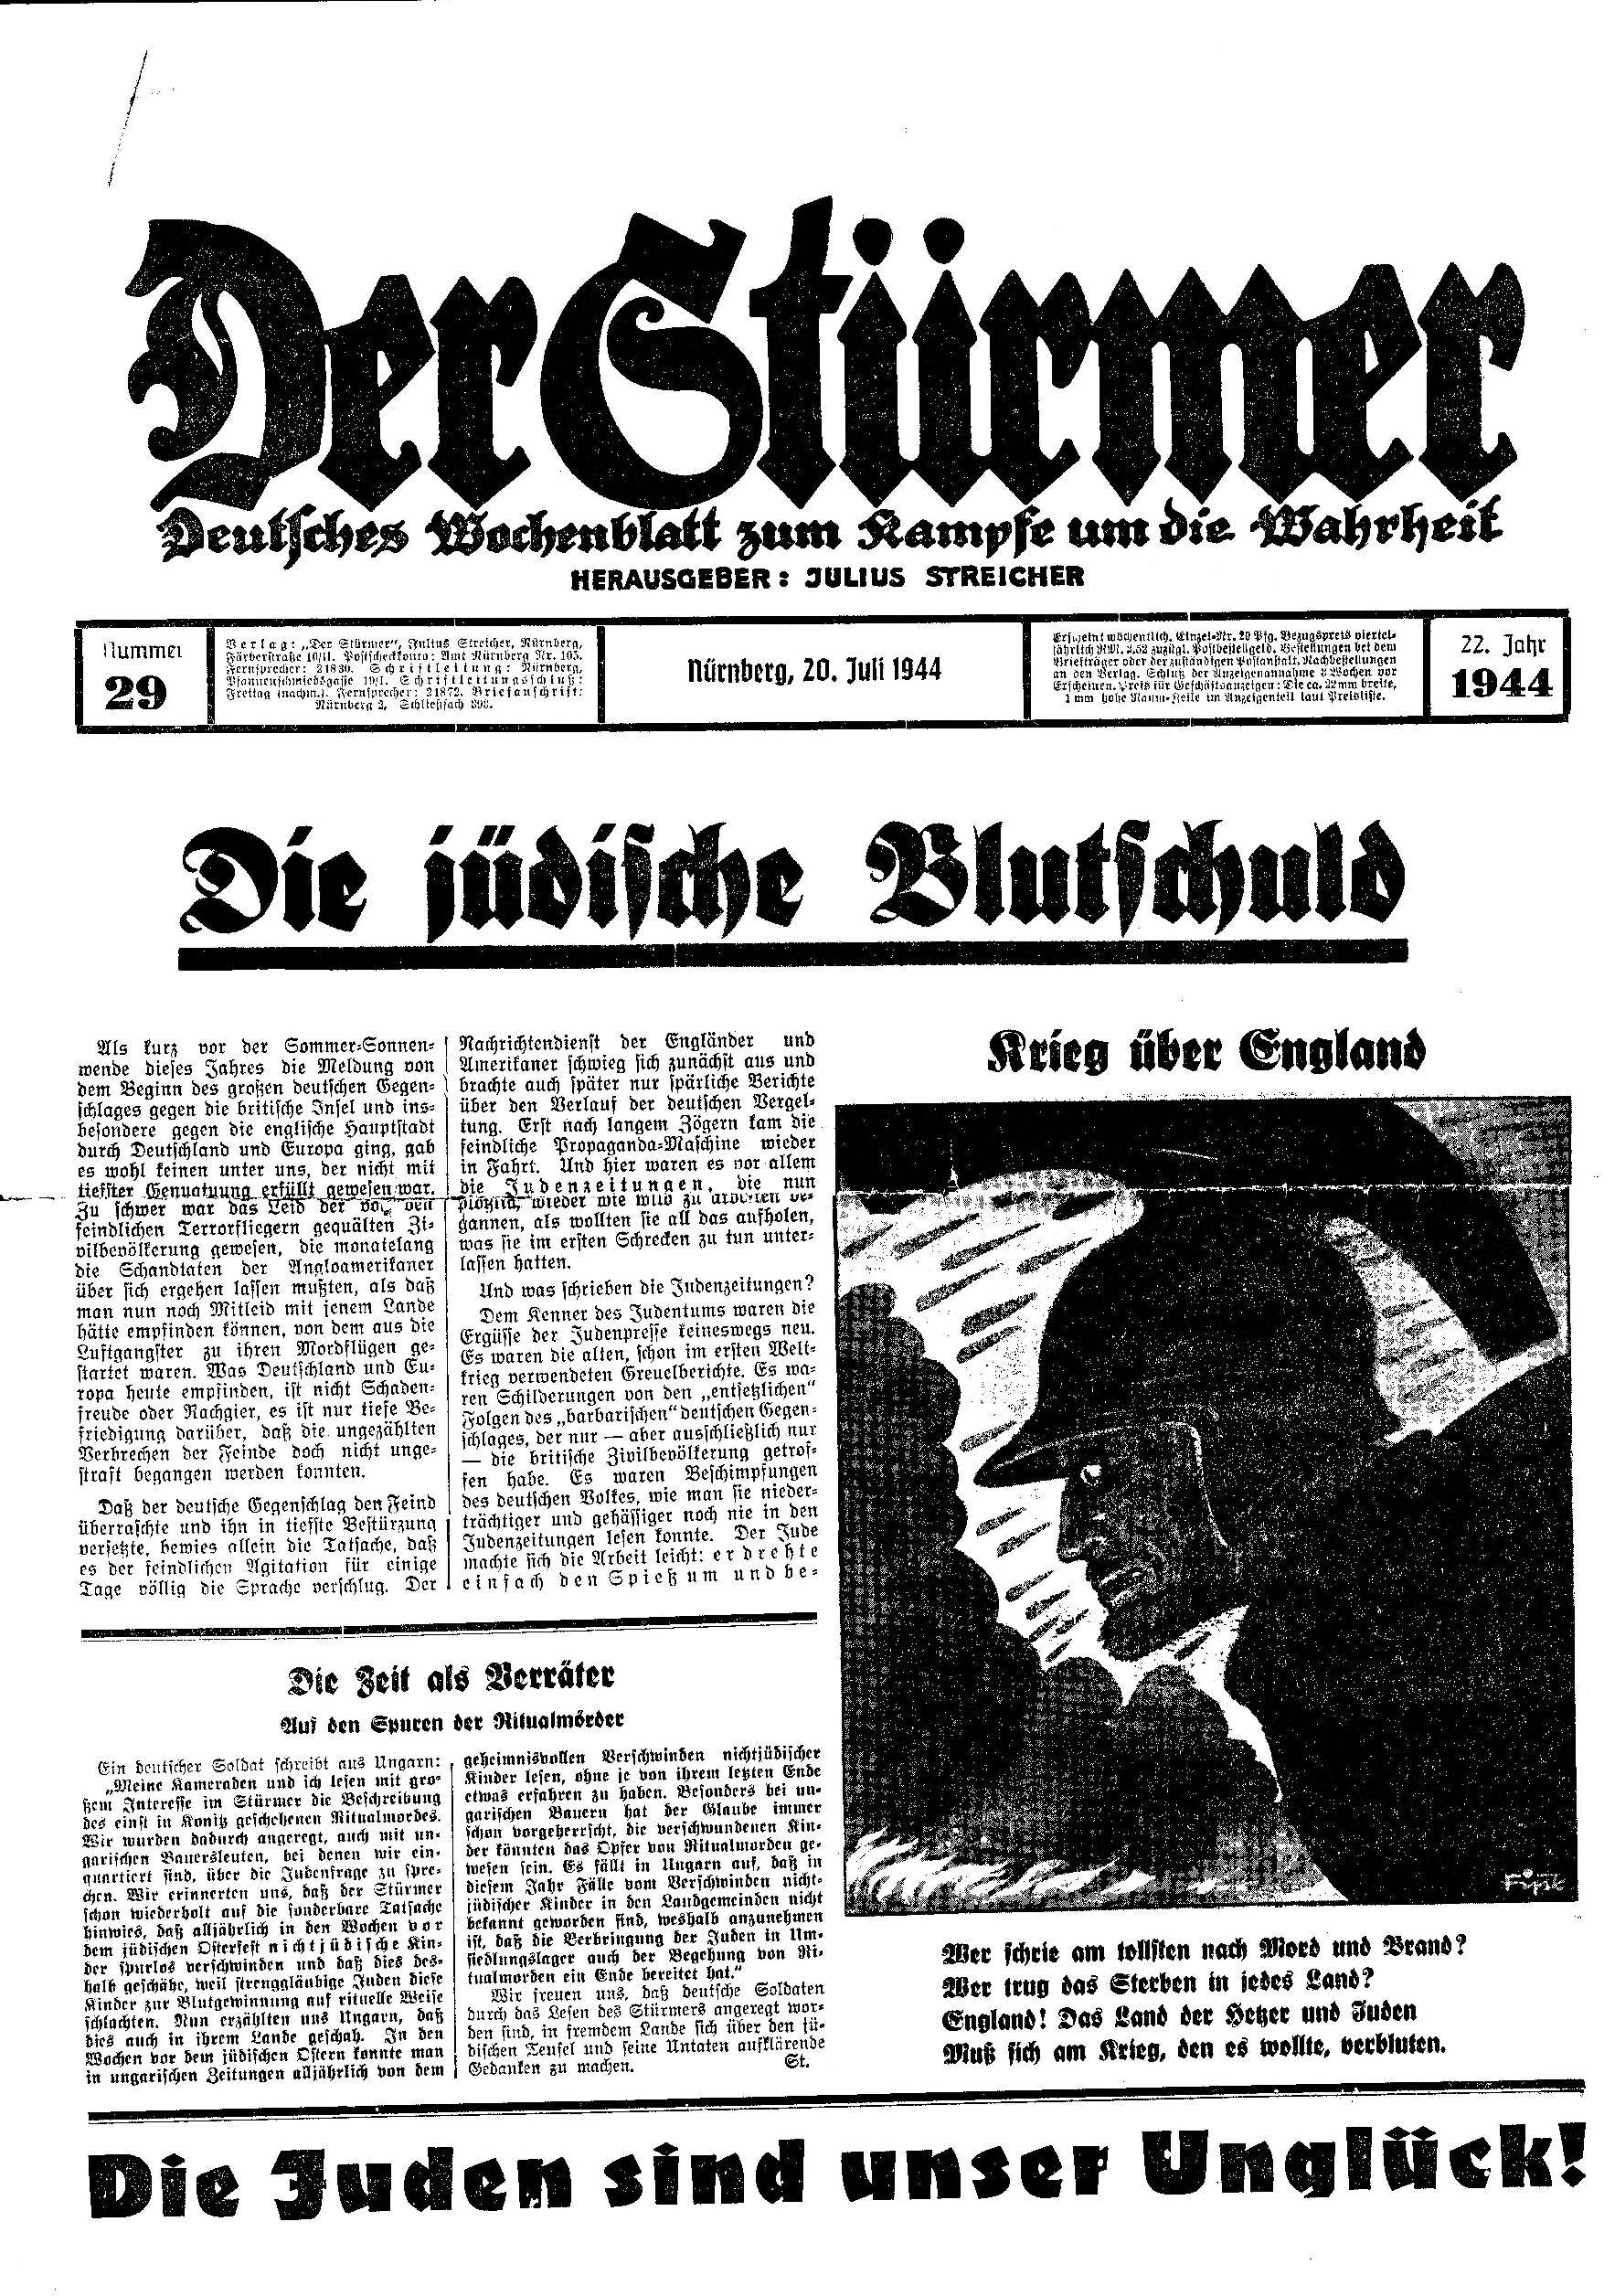 Der Stürmer - 1944 Nr. 29 - Die jüdische Blutschuld